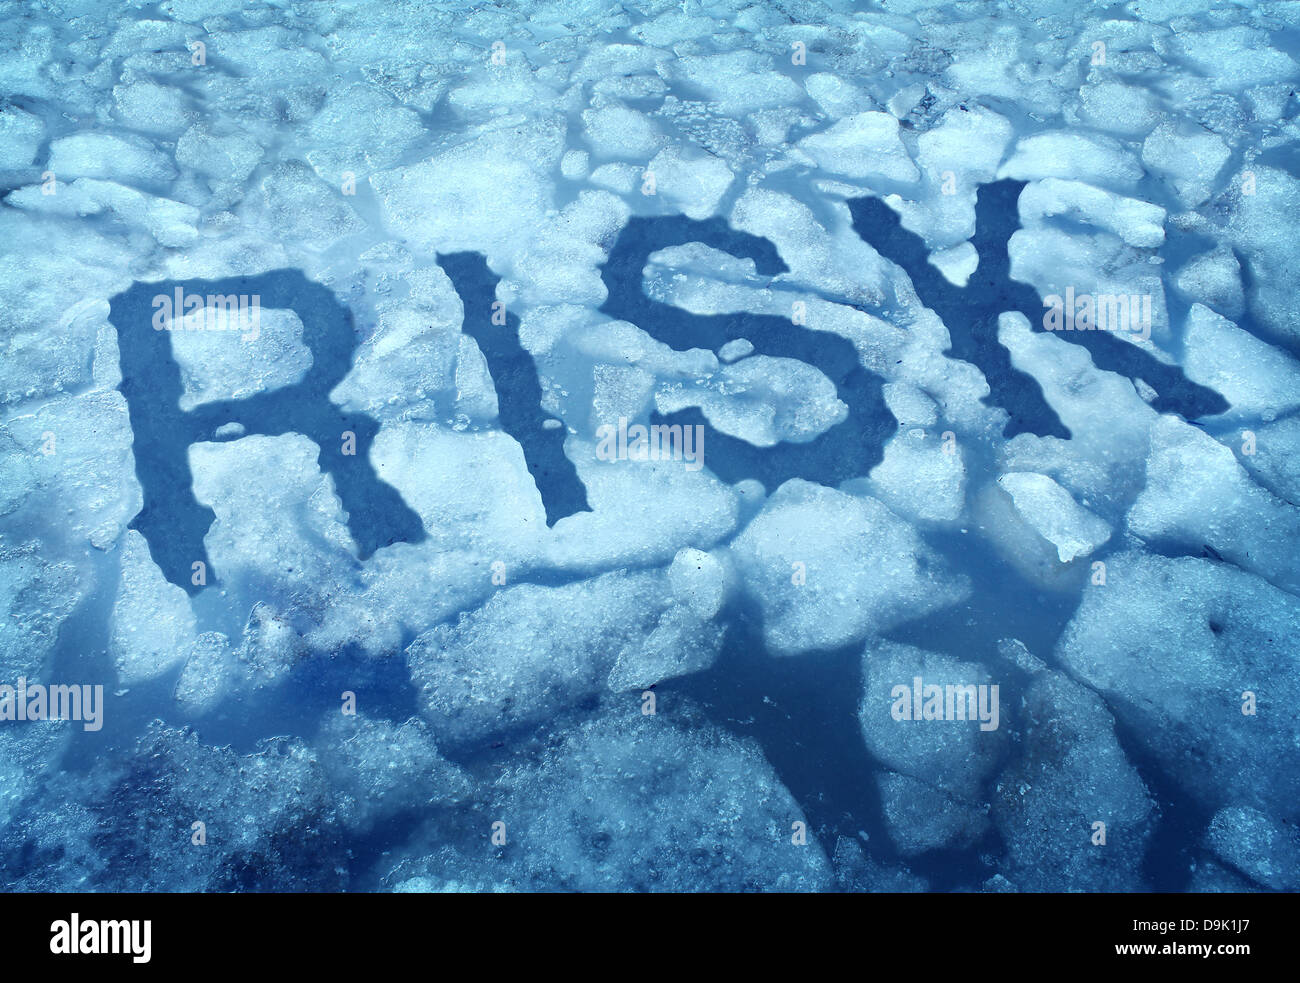 Risiko und Gefahr als ein dünnes Eis-Konzept mit dem Wort eingebettet in einem gebrochenen zugefrorenen See Warnung jede Person als sehr vorsichtig sein Stockfoto